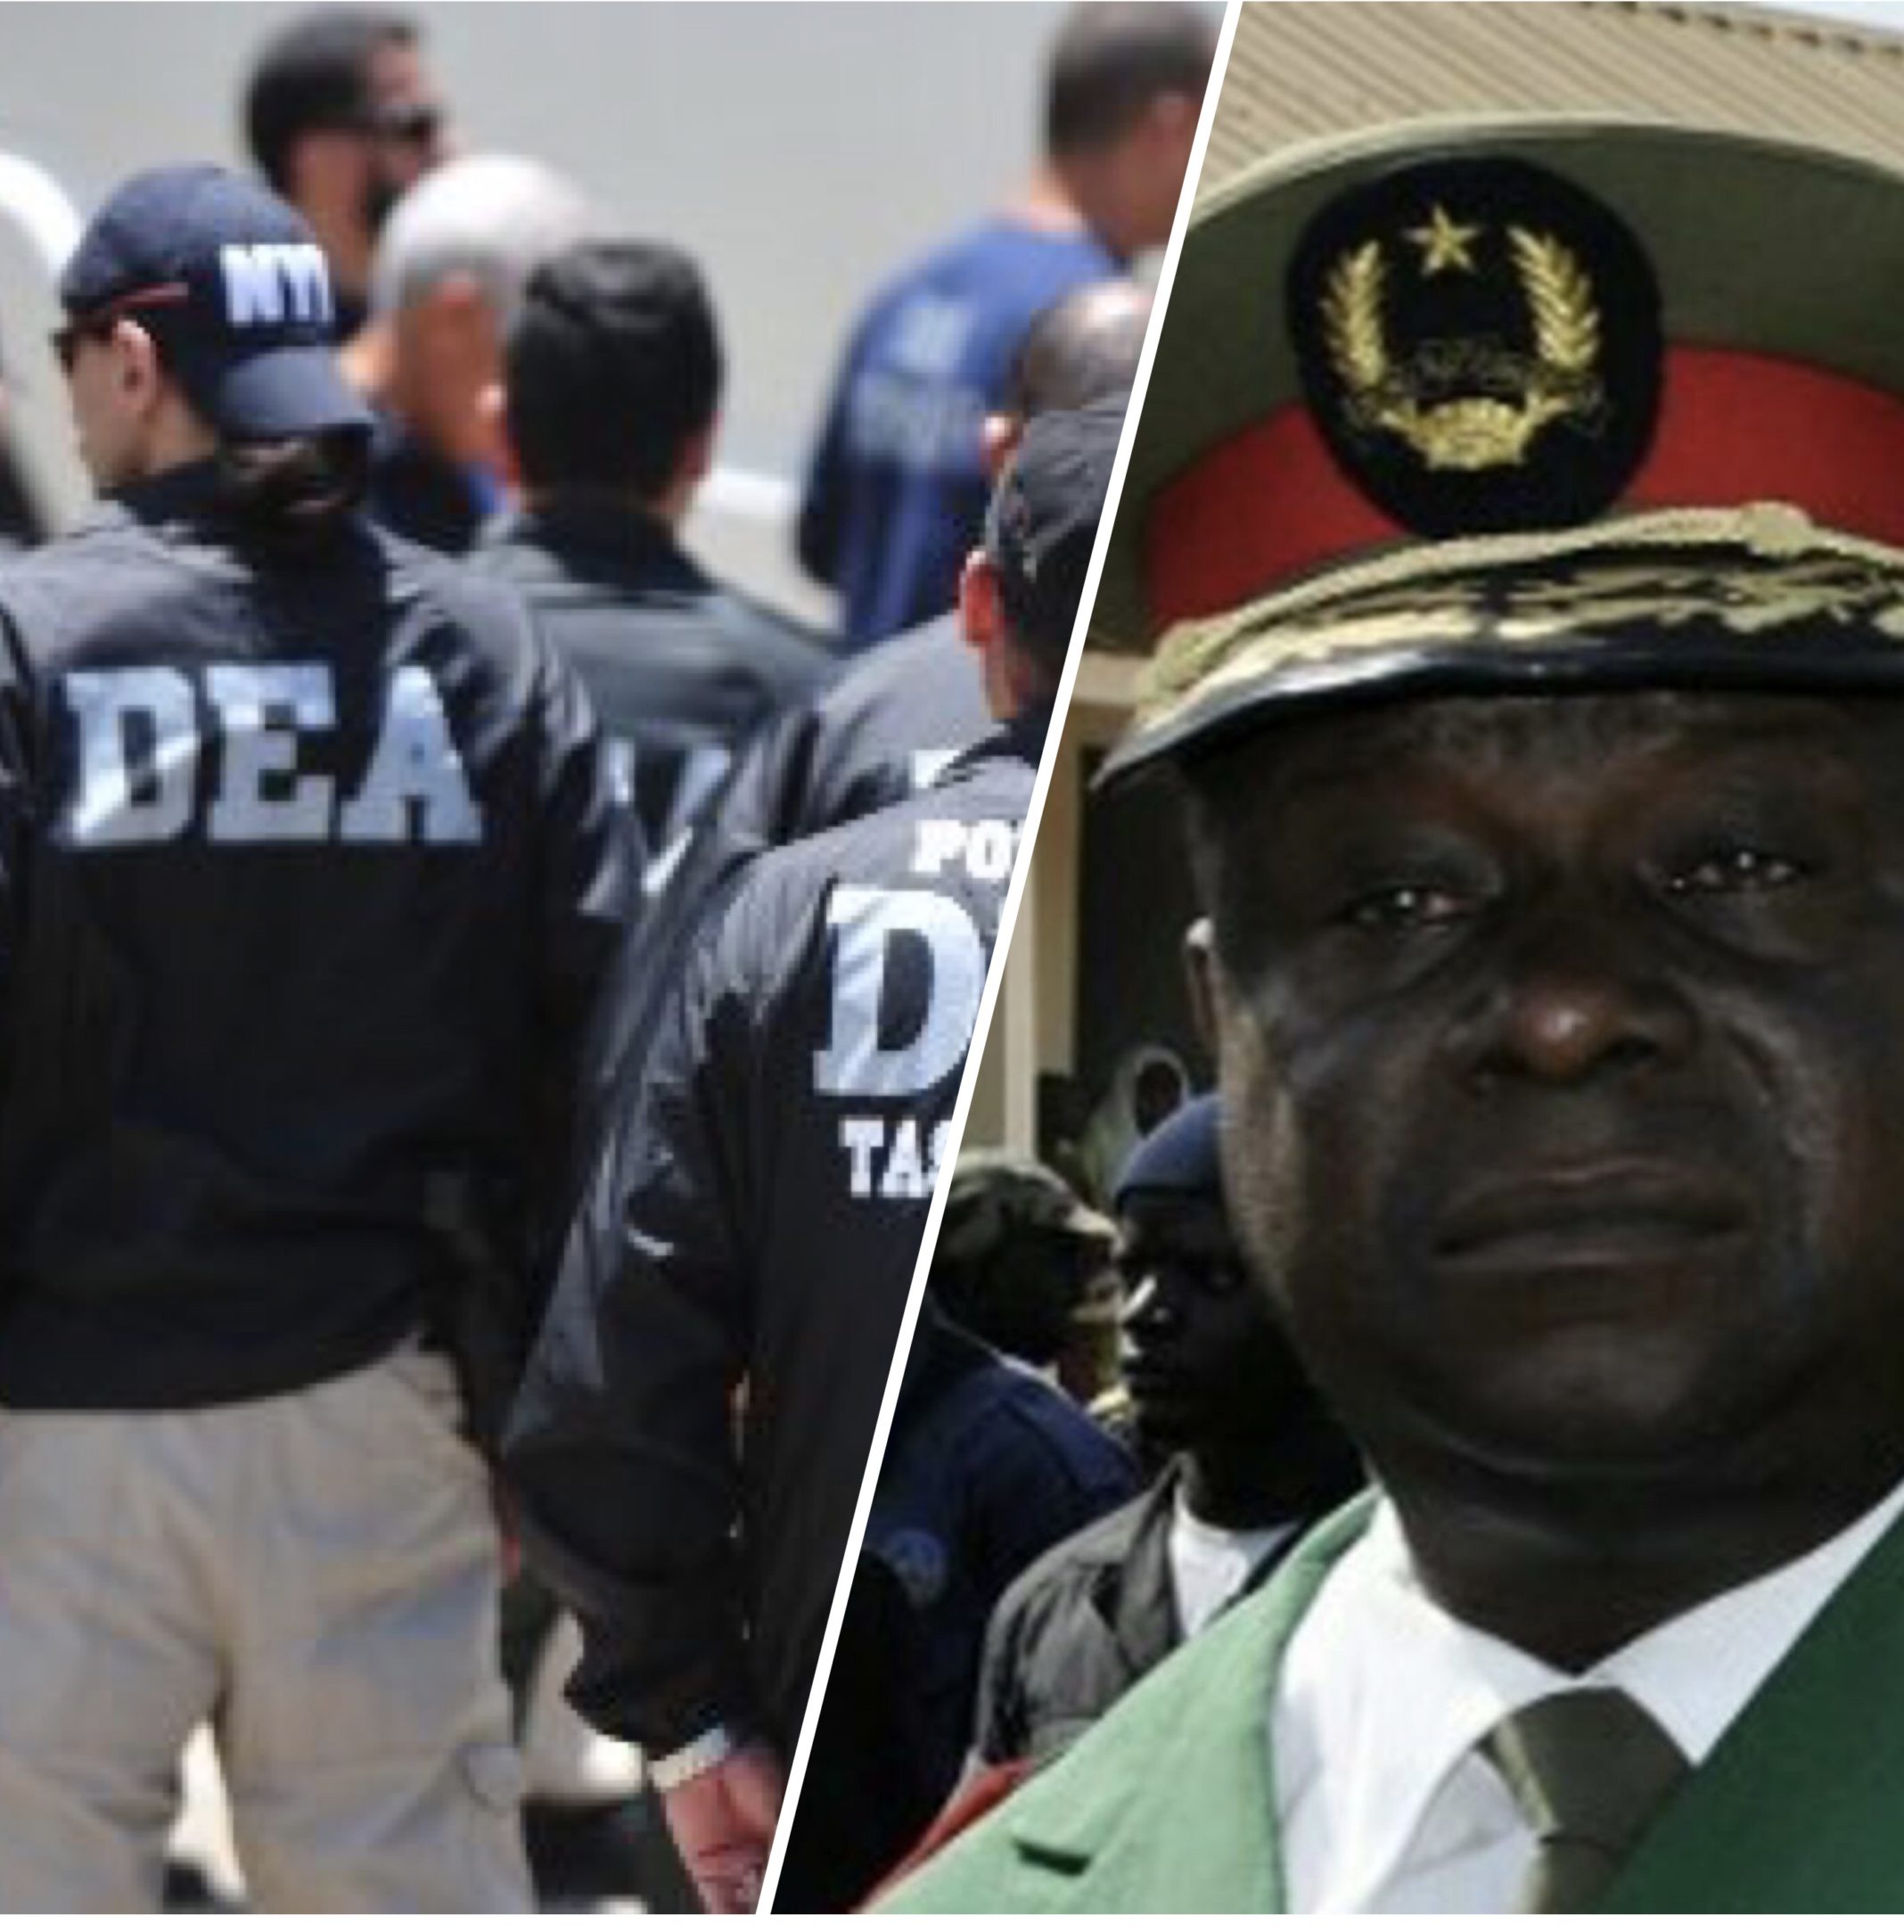 Exclusivité / Guinée-Bissau: Soupçonné de trafic de drogue et de blanchiment d’argent, la DEA met 5 millions de dollars pour la capture du Général Antonio Indjai